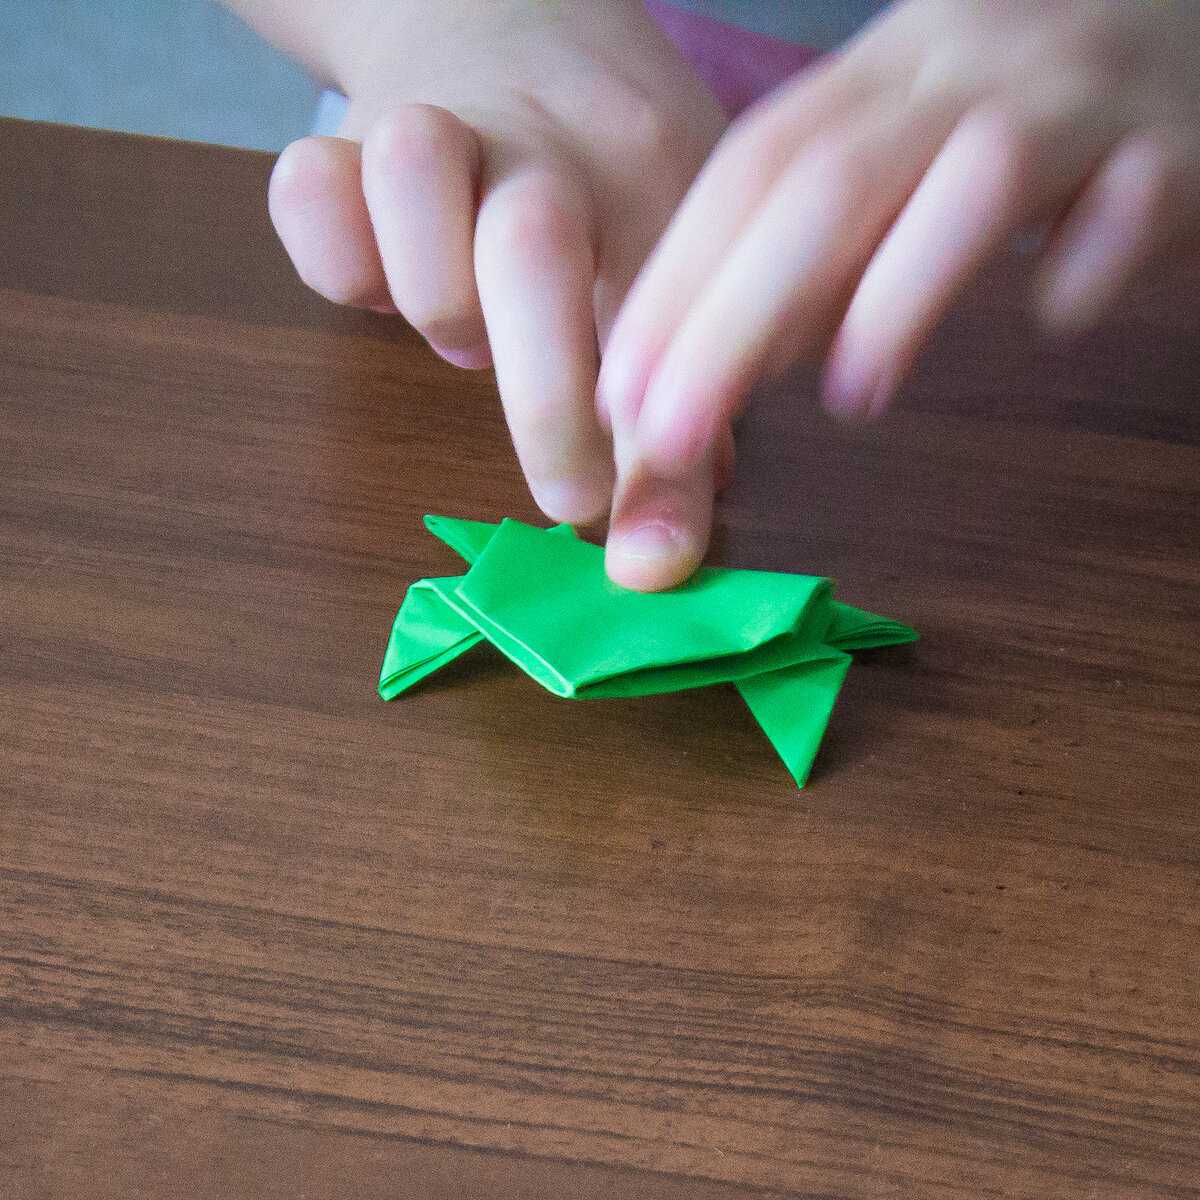 Поделка лягушка из бумаги своими руками - 69 фото идей необычных изделий в виде лягушек